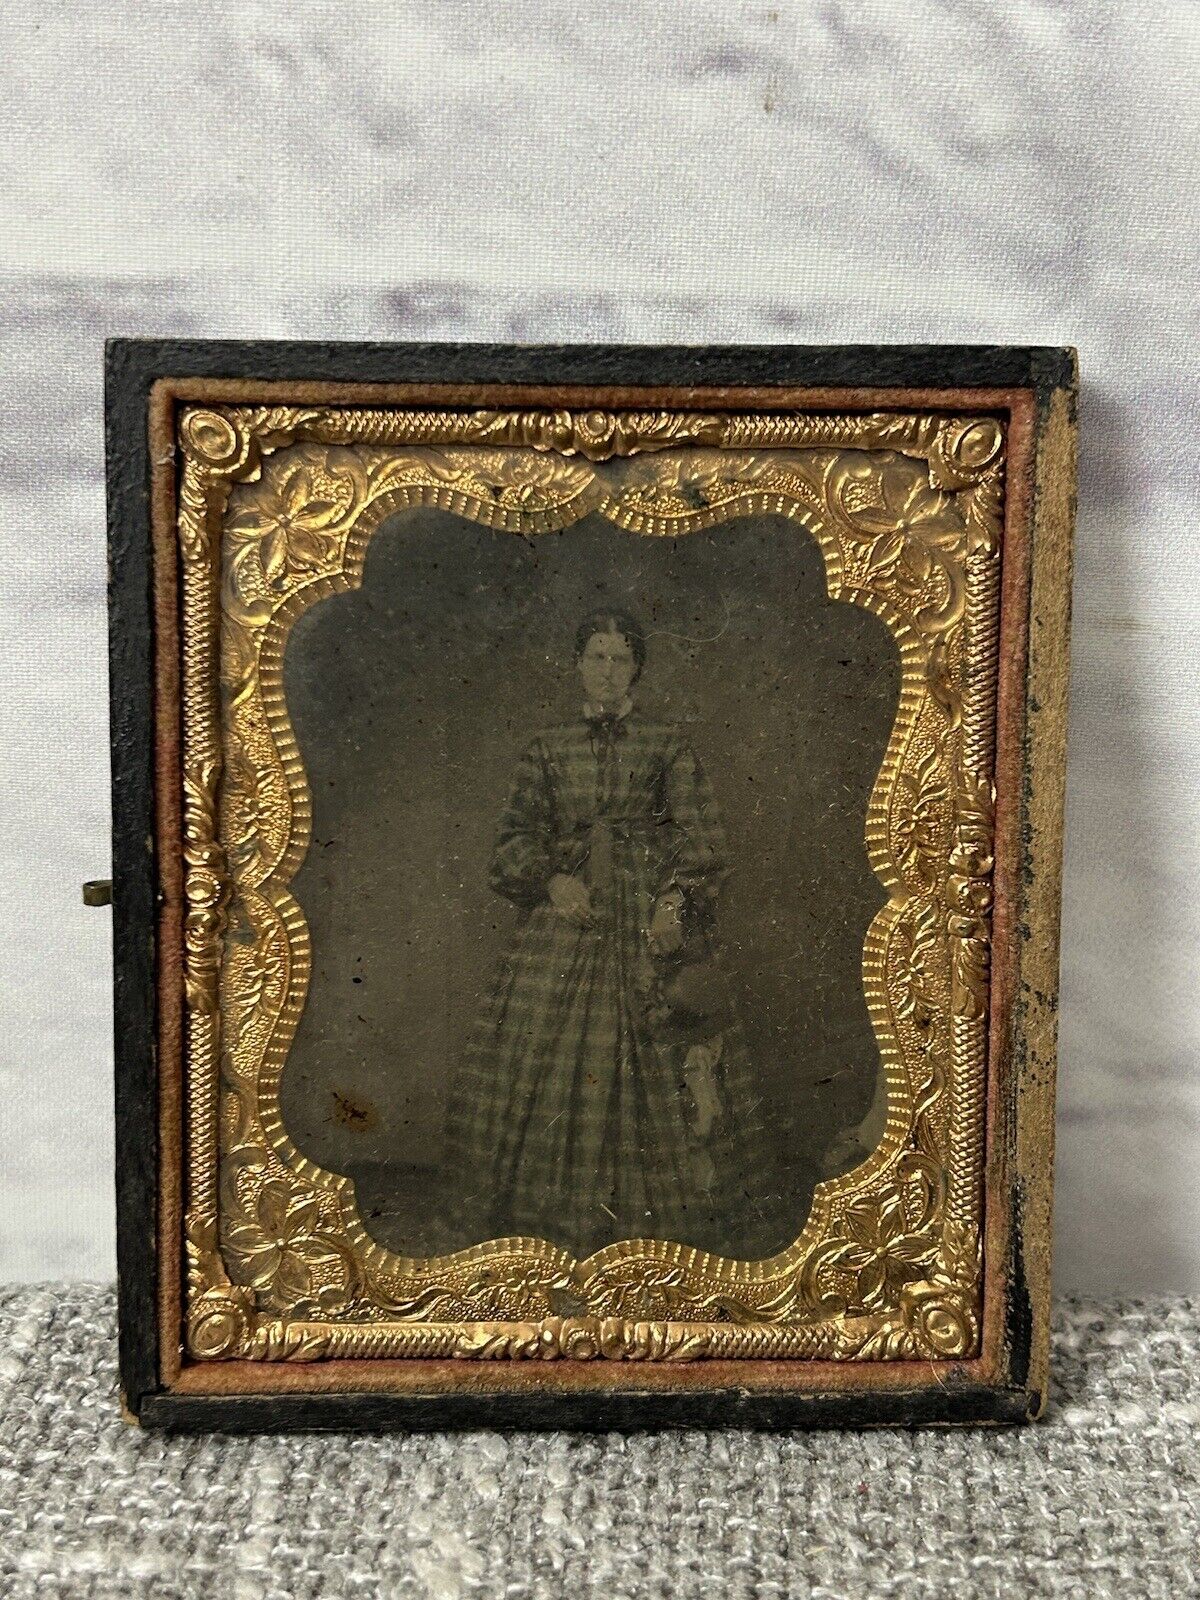 1800s Era Tin Type Daguerrotype Victorian Woman Glass Framed Antique 3.25